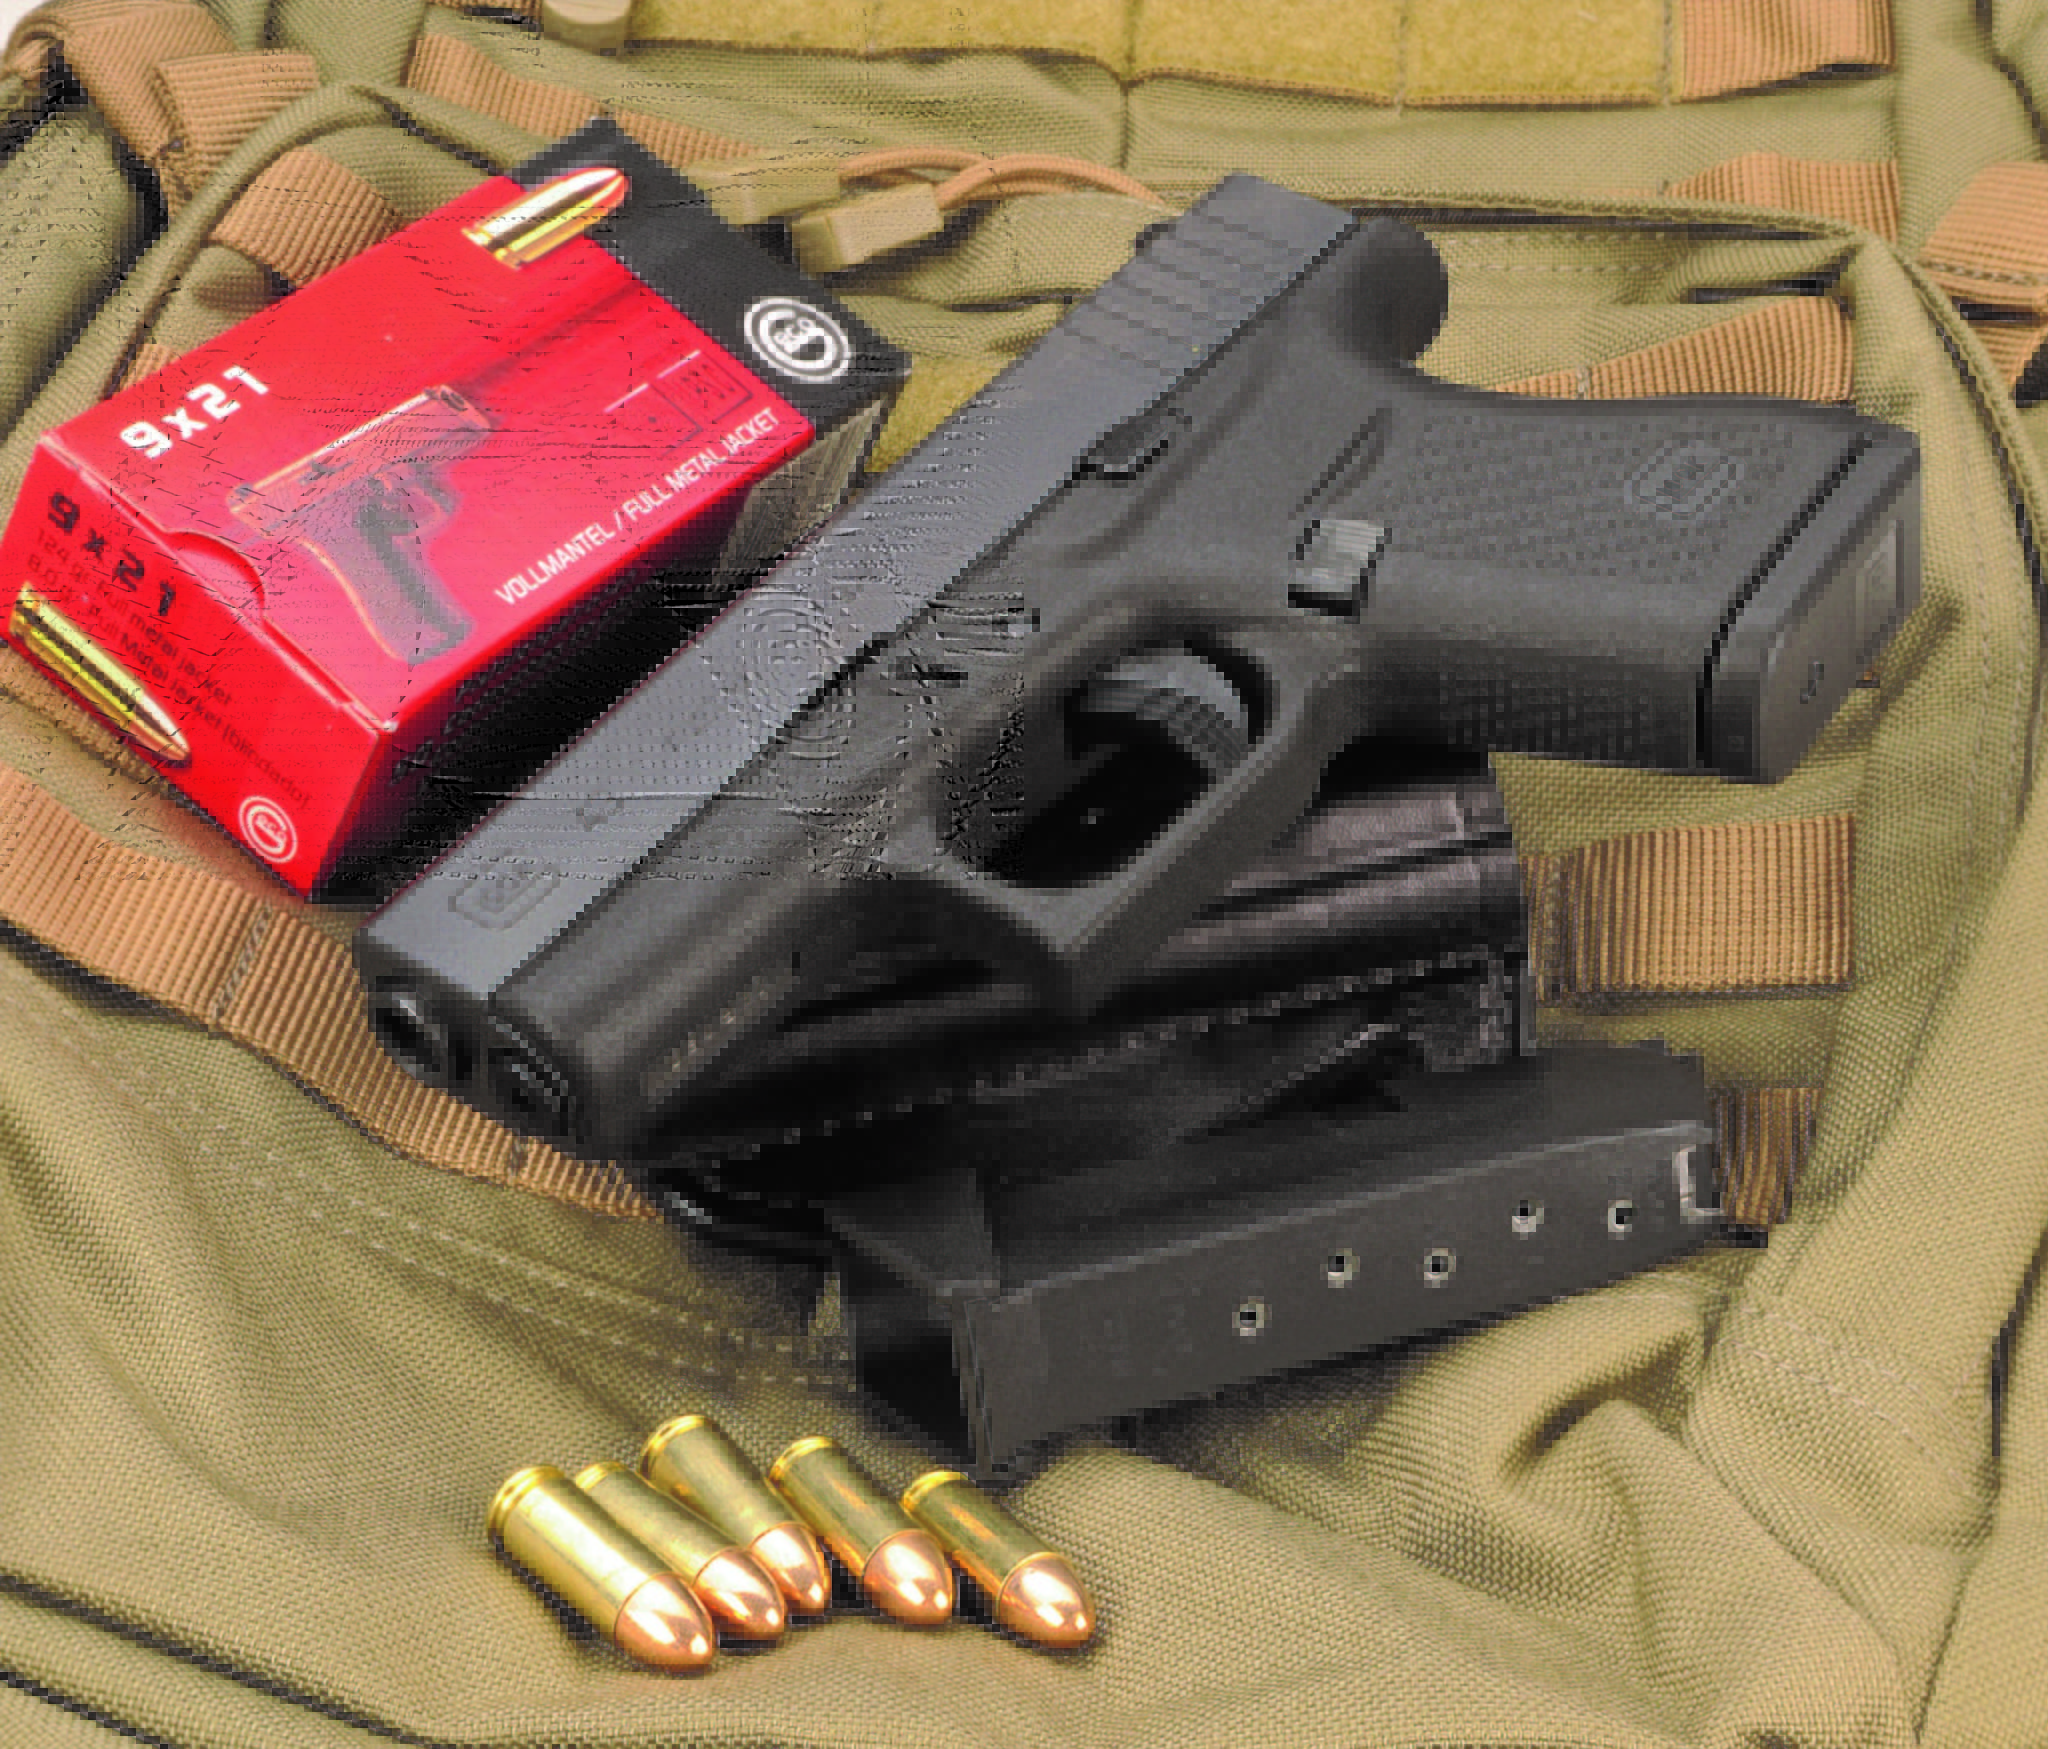 Piccola in 9 pieno: Glock G43 cal. 9x21 Imi - Armi Magazine